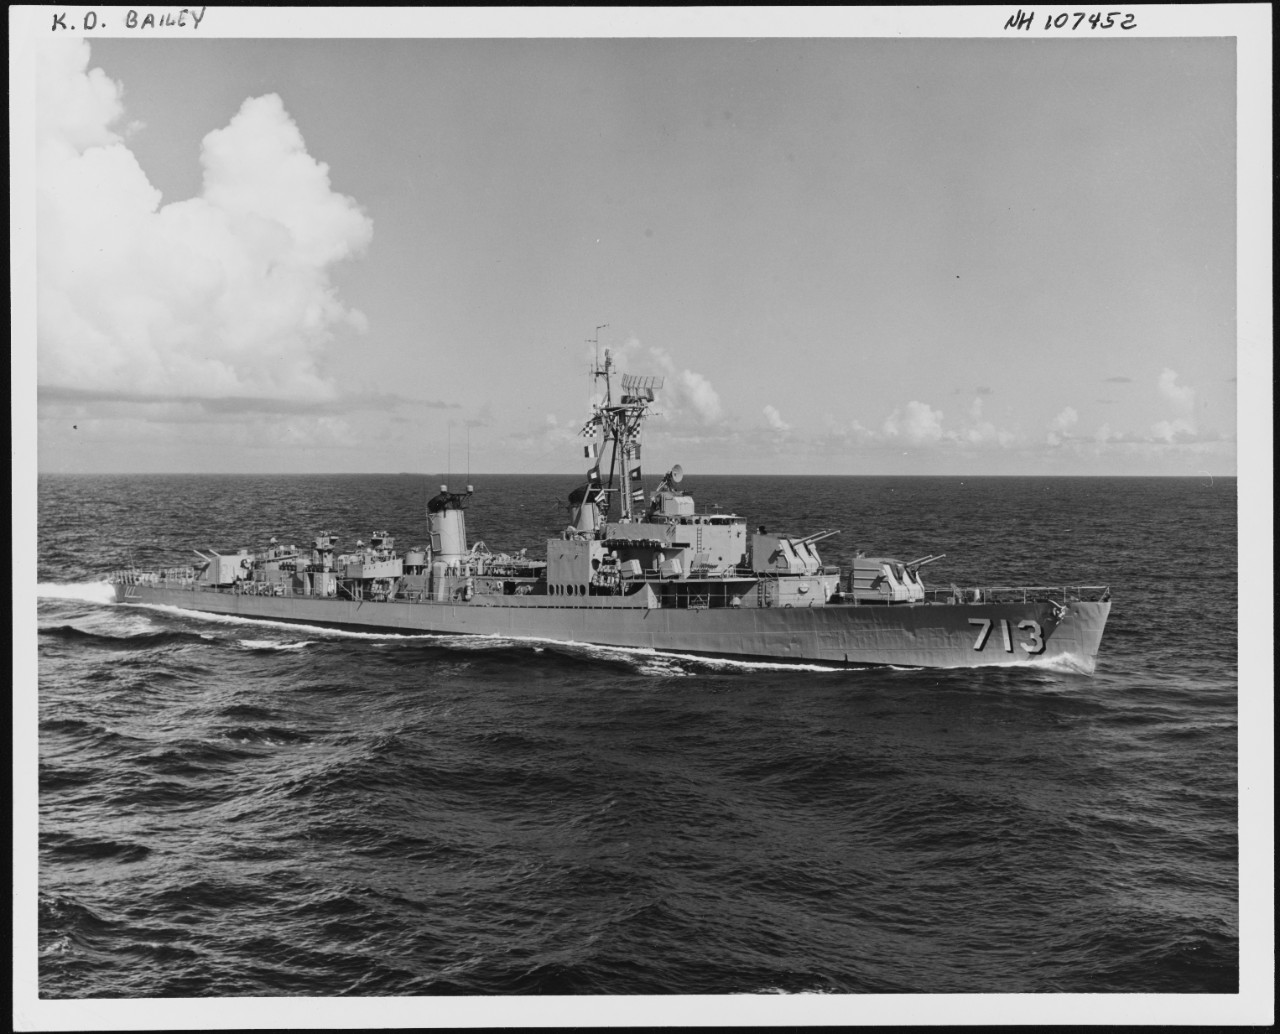 Photo #: NH 107452  USS Kenneth D. Bailey